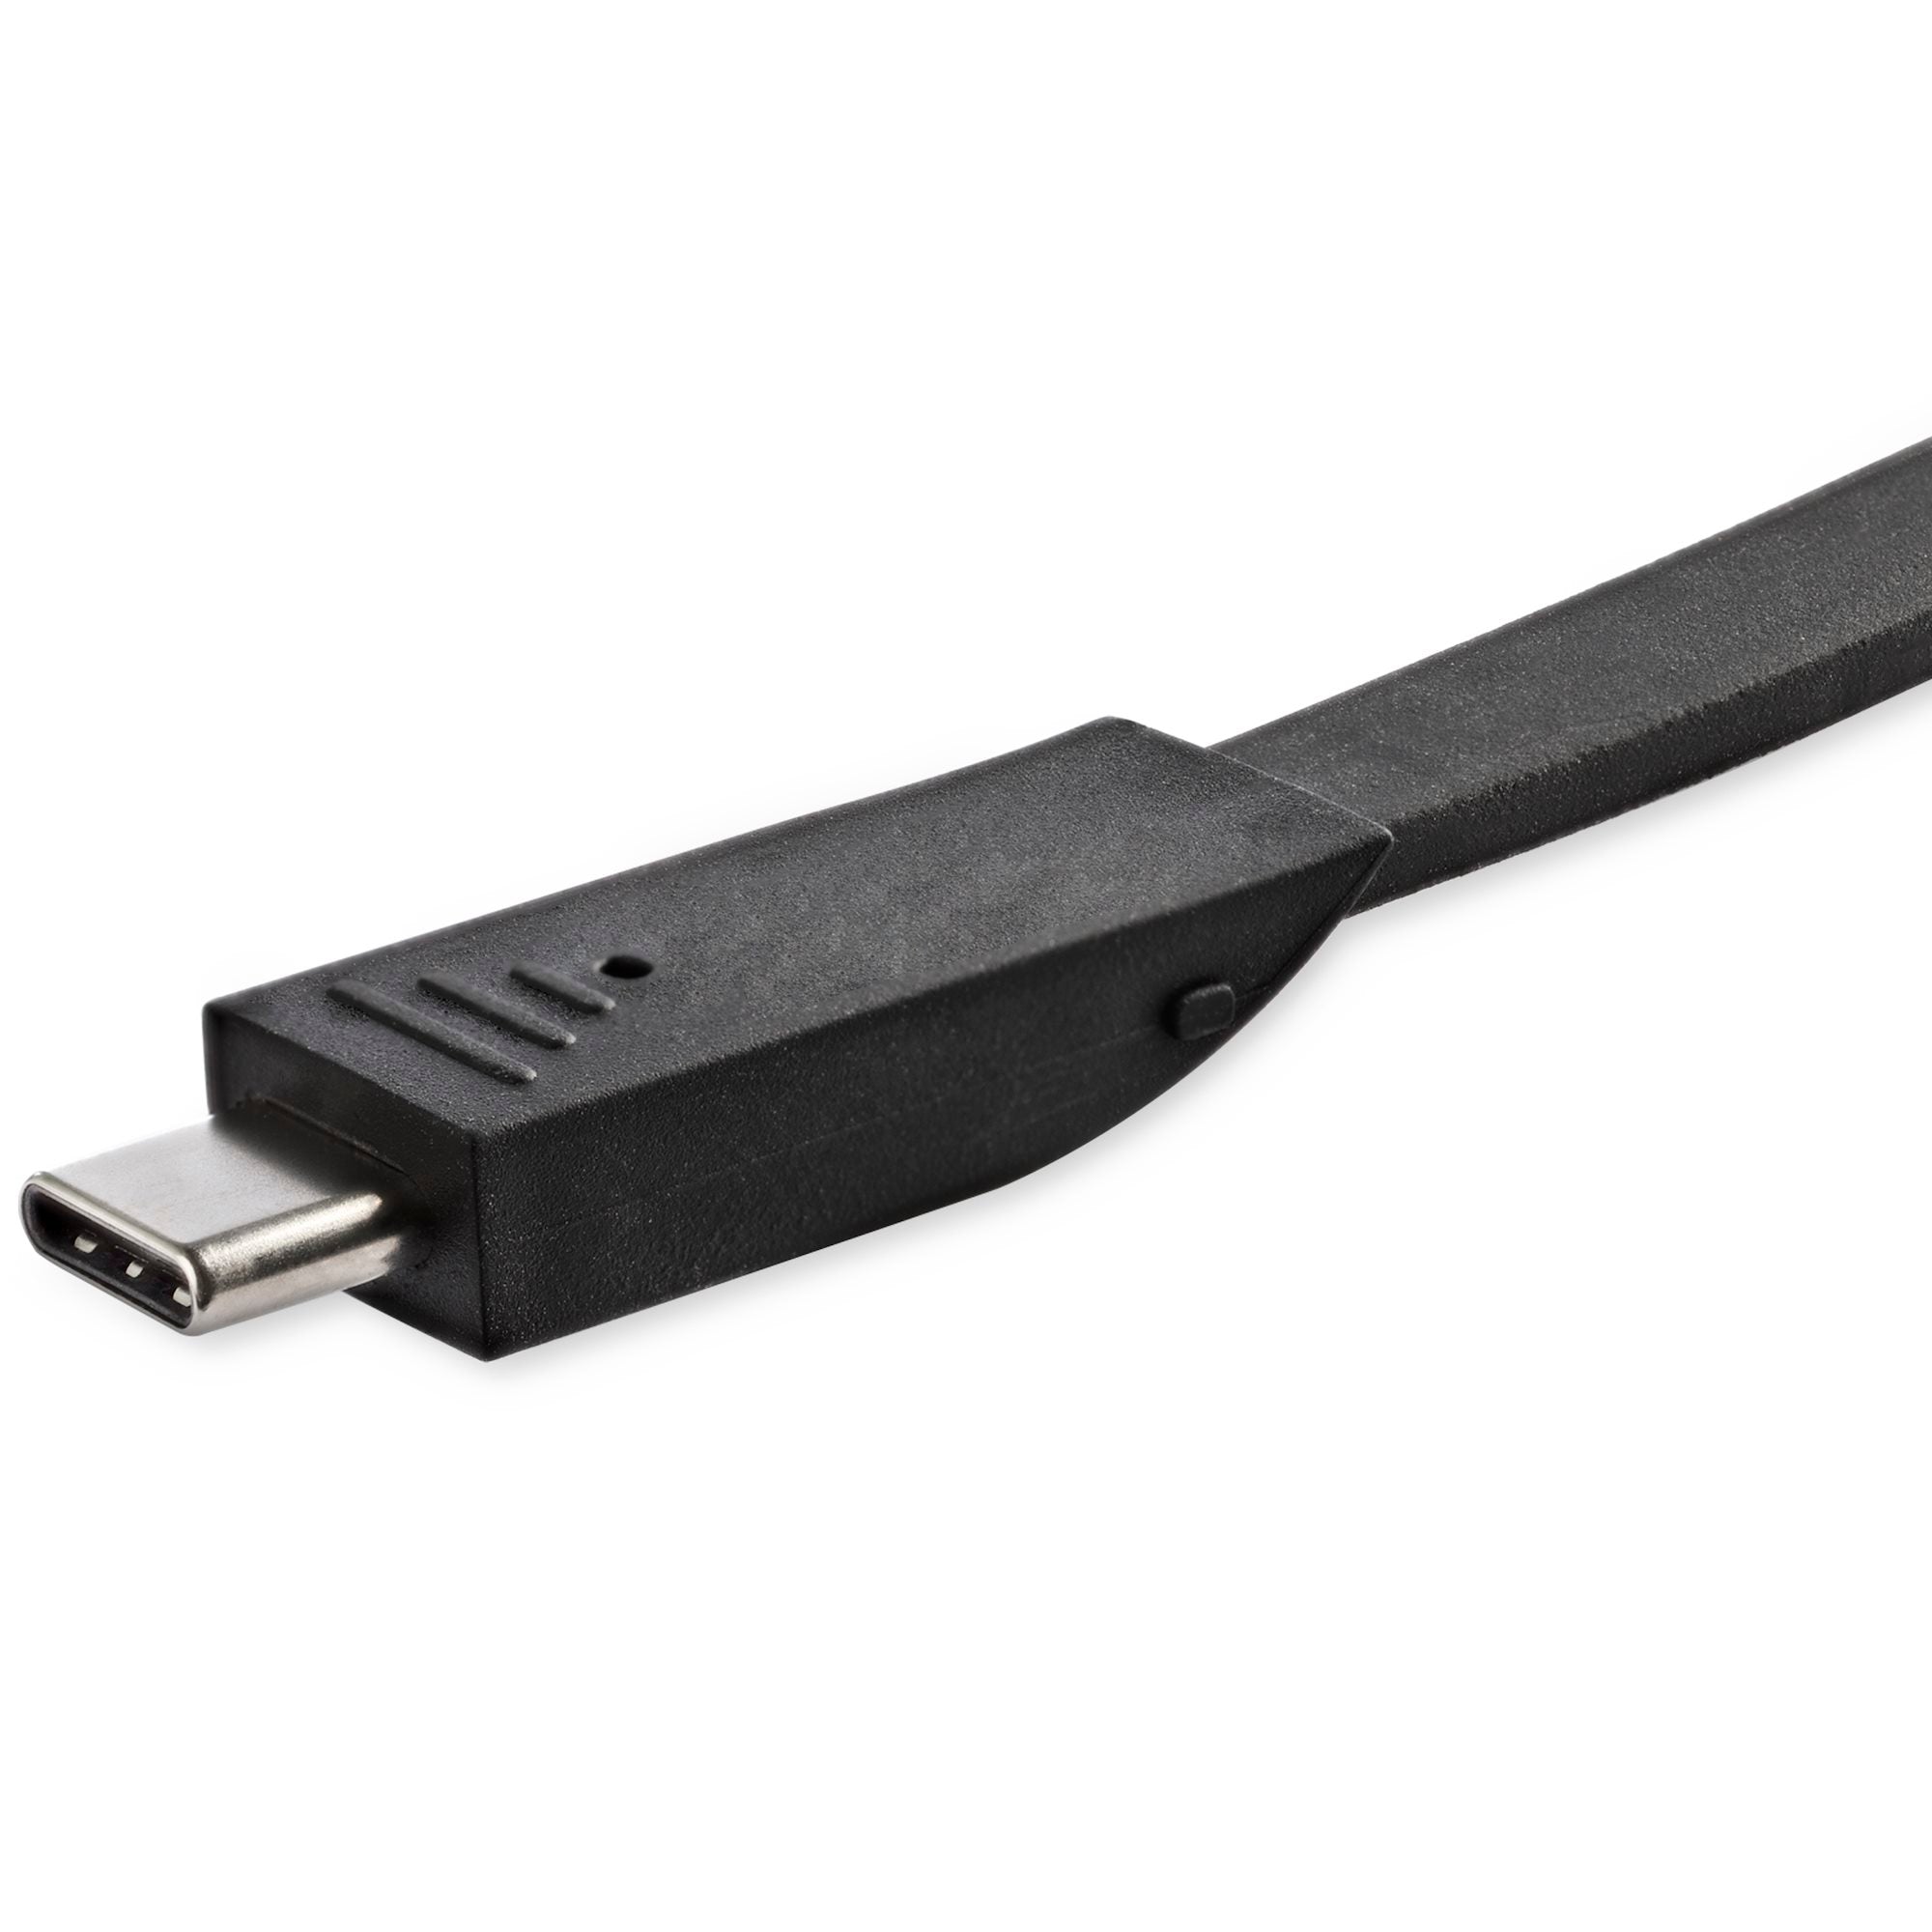 Adaptador Multipuertos USB-C con HDMI 1xA - Docking Station Portátil USB Tipo C con 4K y HDMI - 1xC - PD 3.0 de 100W Pass-Through - para Ordenador Portátil Thunderbolt 3 y USB C - para Mac y Windows